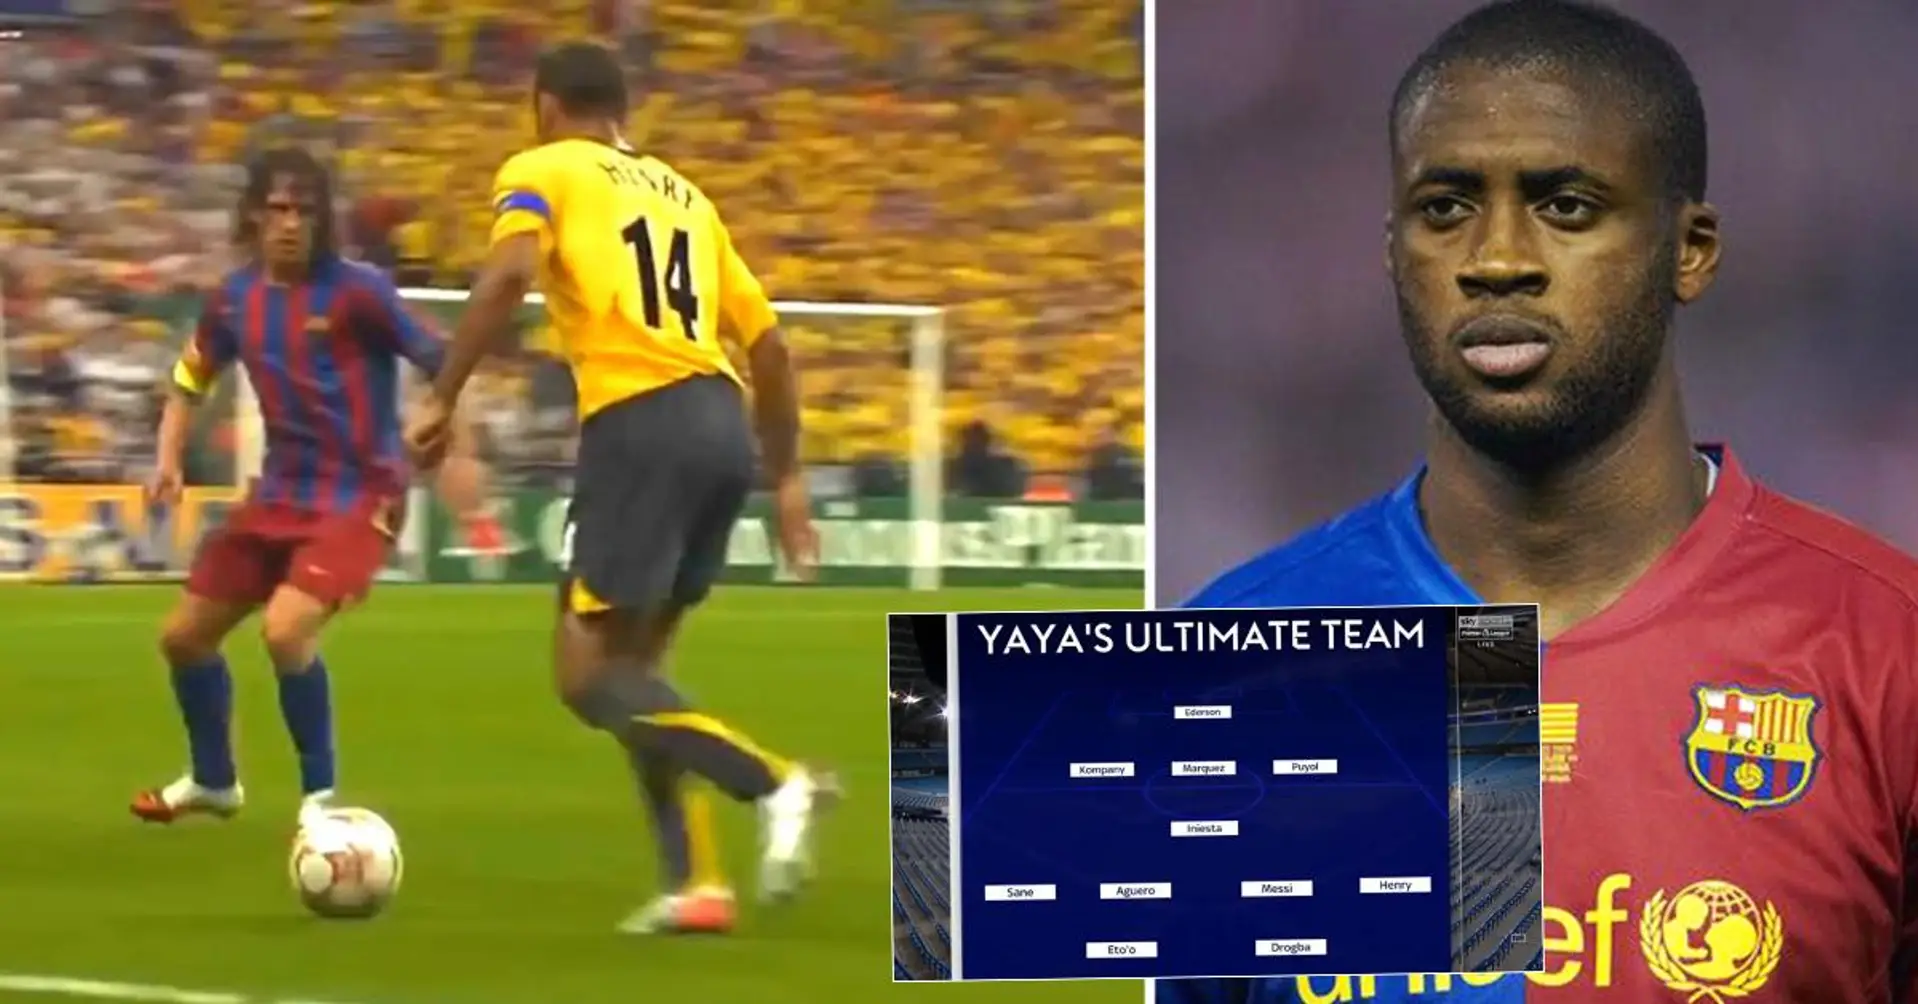 Das Ultimate Team von Yaya Toure ist verrückt - 6 Stürmer, 3 Verteidiger und nur EIN Mittelfeldspieler